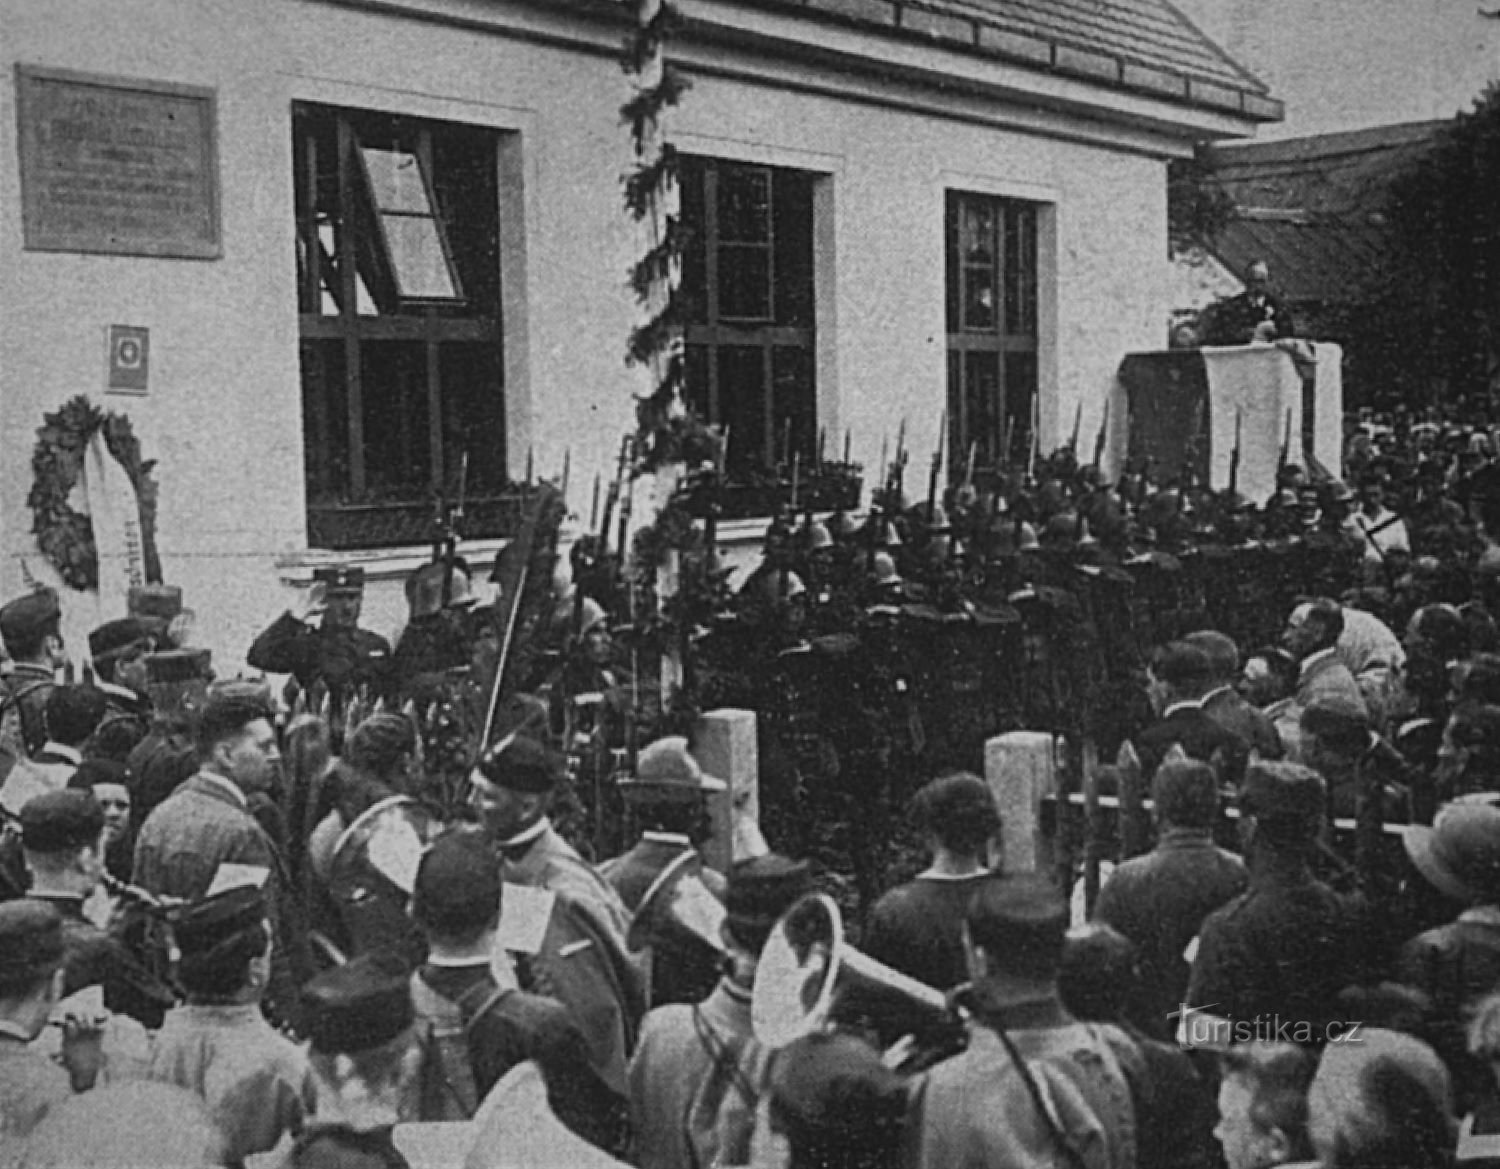 Inauguración de la placa conmemorativa en la escuela general de la minoría checa de Masaryk en Velká Buk